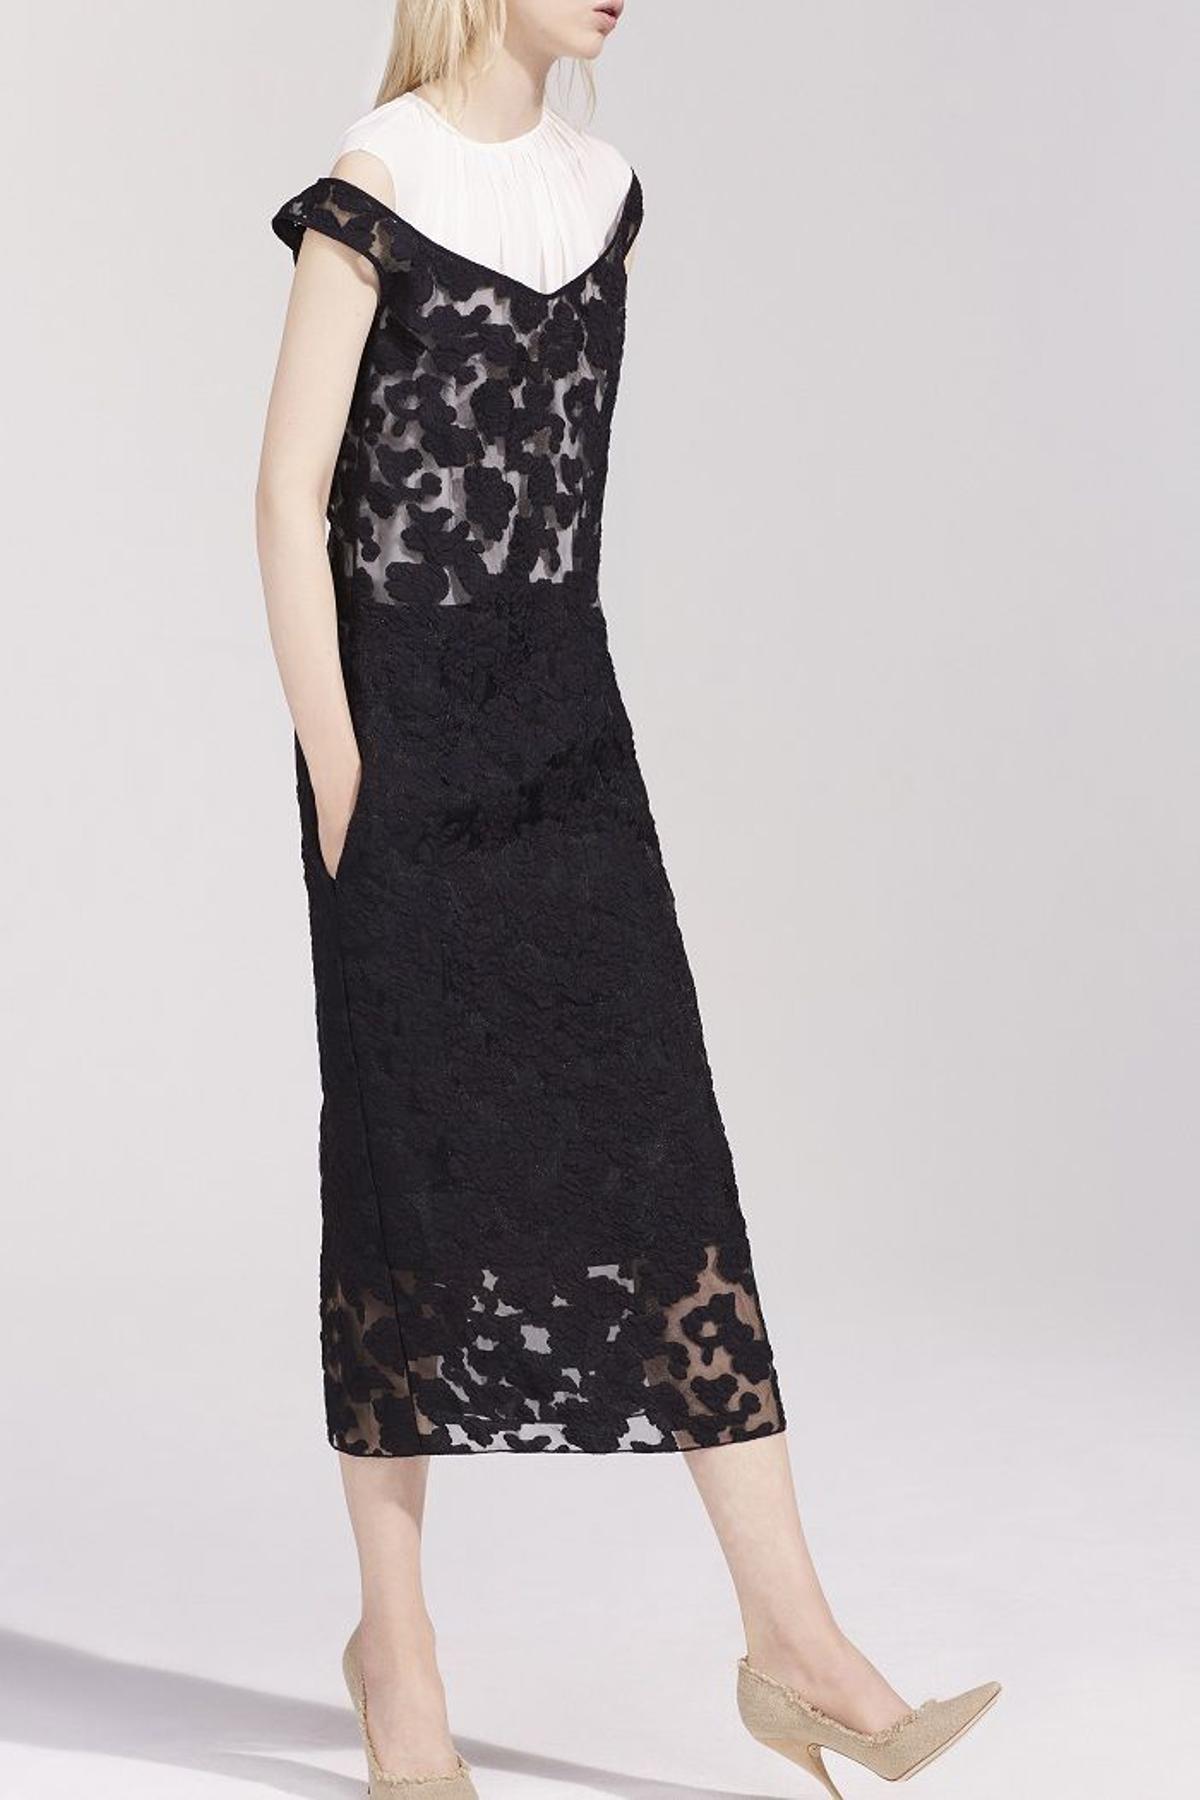 Nina Ricci colección primavera 2016, vestido midi negro